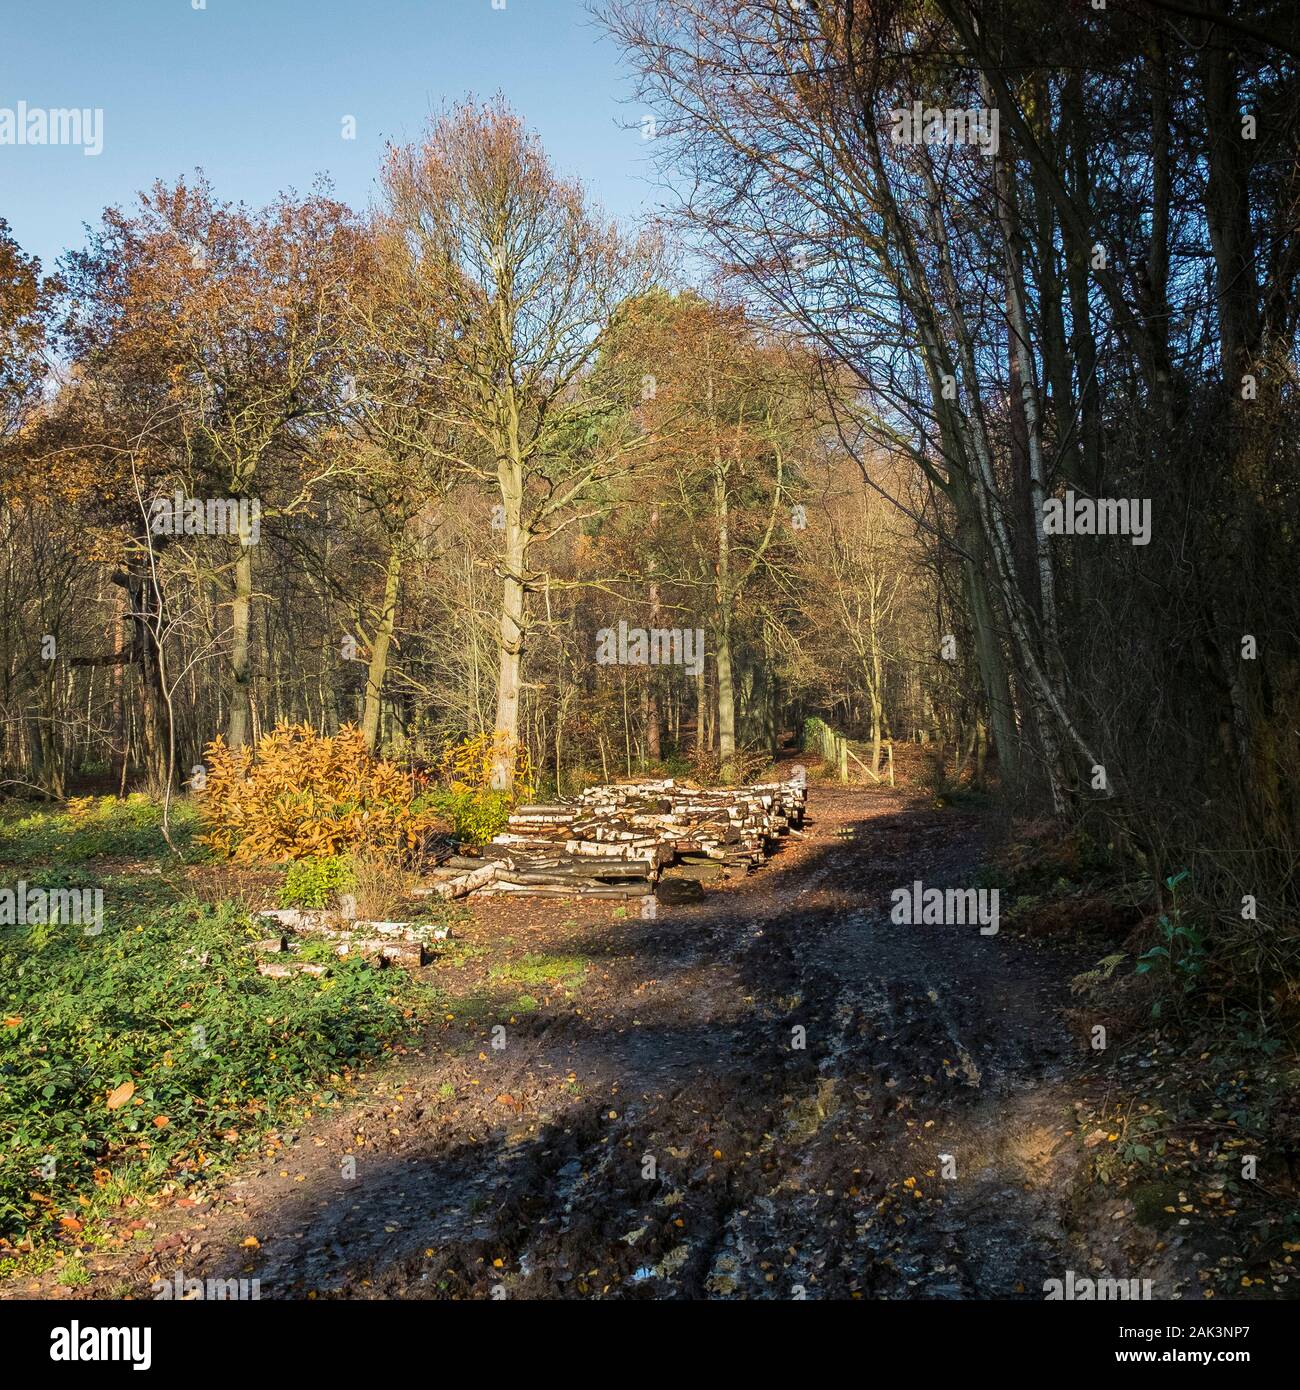 Pile di log come parte della gestione forestale e apertura di nuovi percorsi a Thorndon Park a Brentwood in Essex. Foto Stock